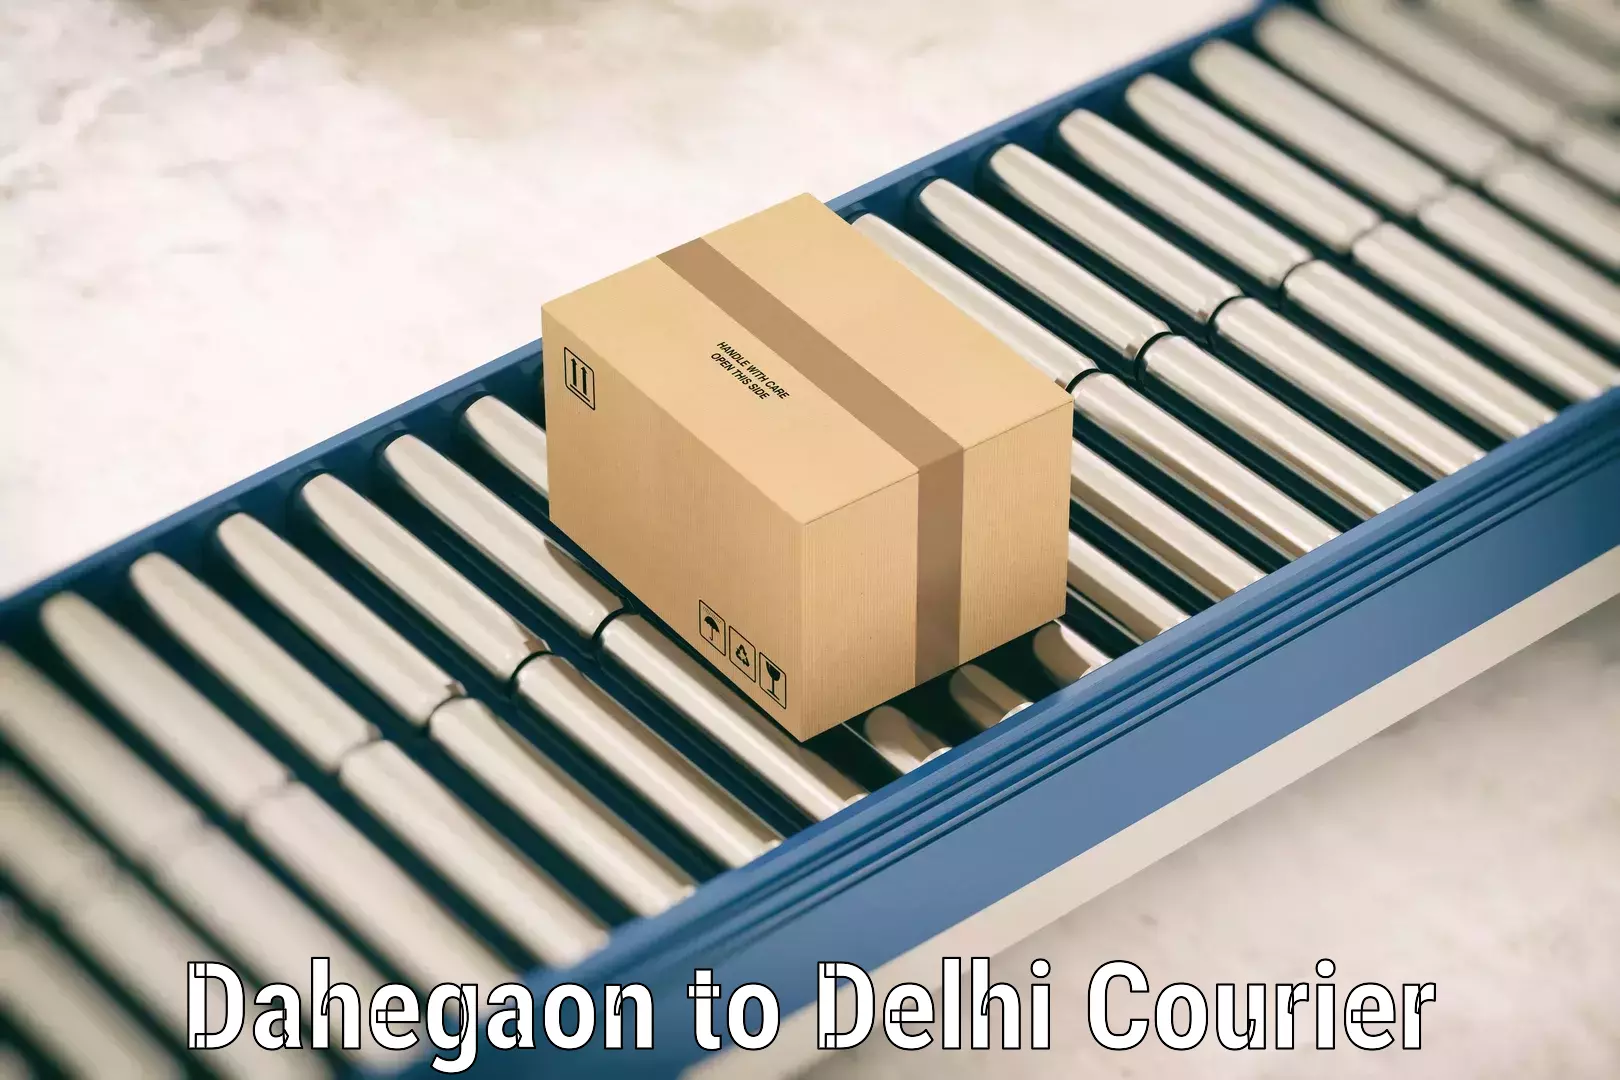 Luggage delivery app Dahegaon to Kalkaji